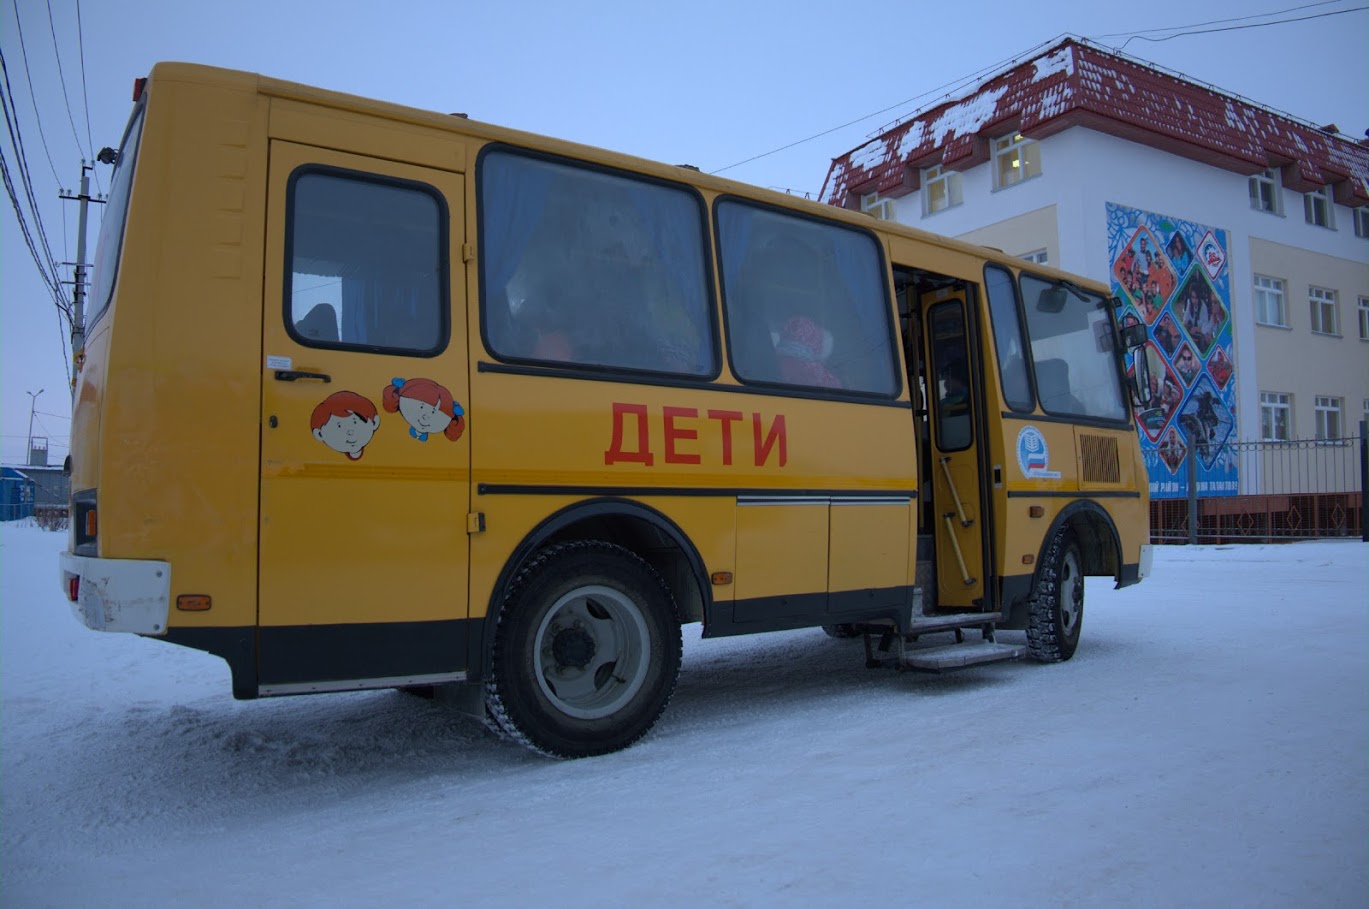 FREMMED: Skolebussen som tegn på noe annet enn det tradisjonelle som barna i Nenets er vokst opp med. Foto: Privat